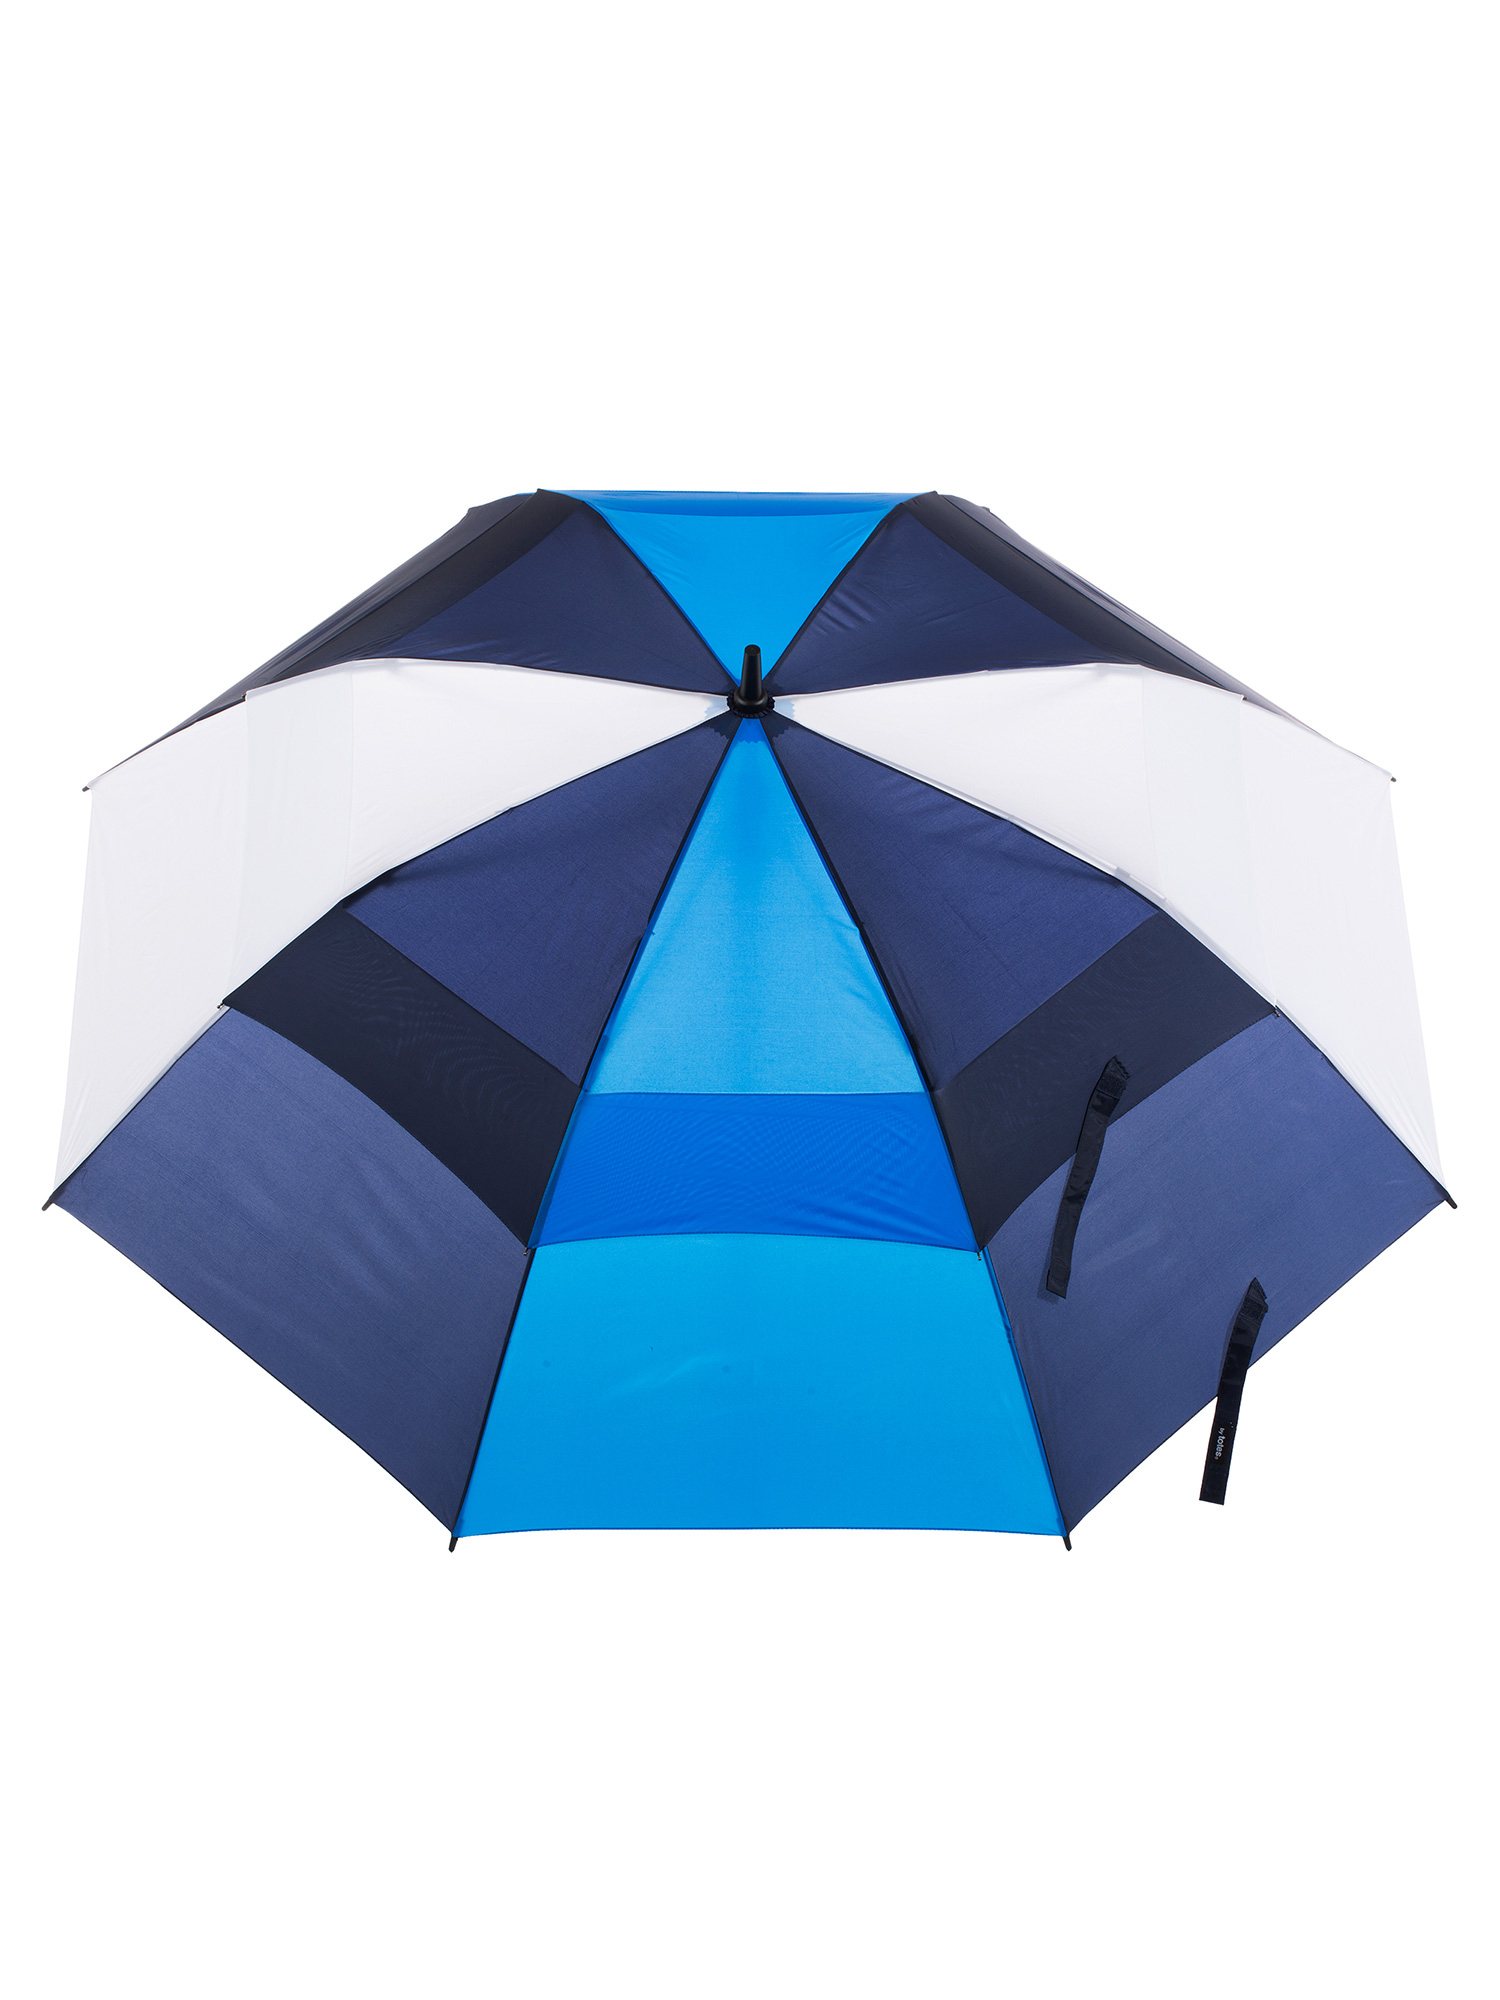 30 بوصة مظلة تنفيس الفيبرجلاس يندبروف الإطار البلاستيك مقبض مظلة الغولف